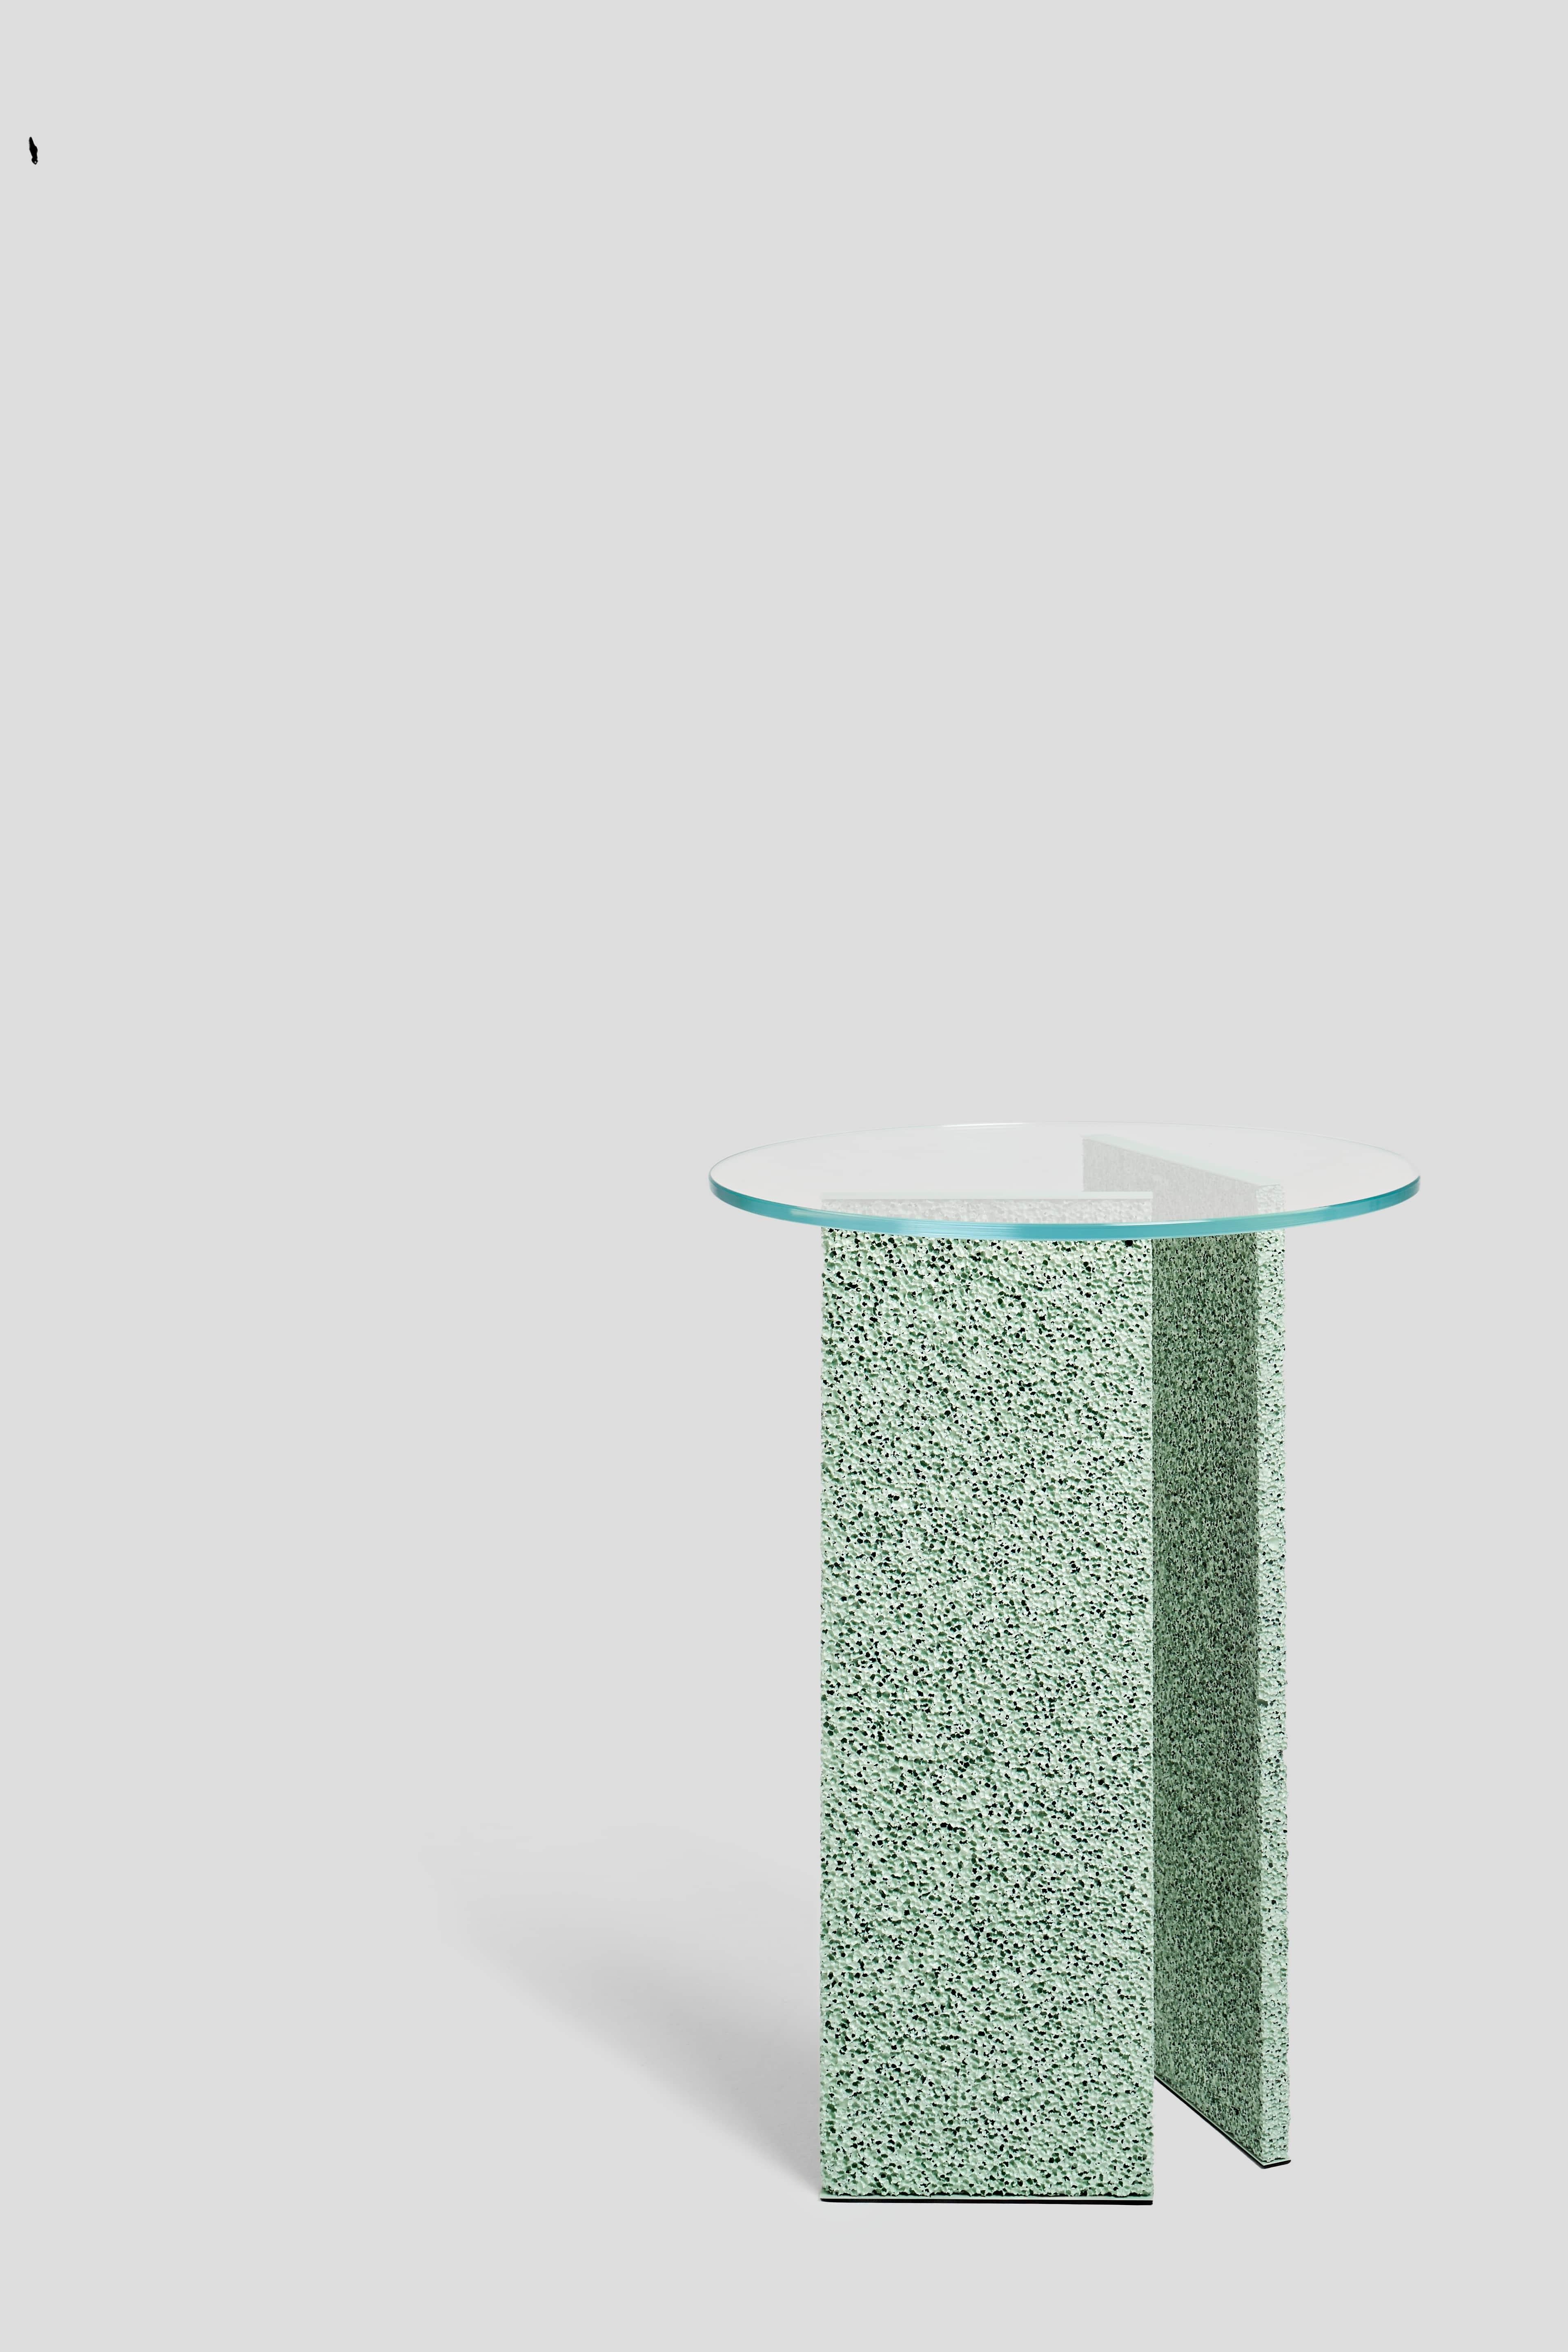 Moulage Table d'appoint SLAB texturée vert clair avec plateau en verre en vente